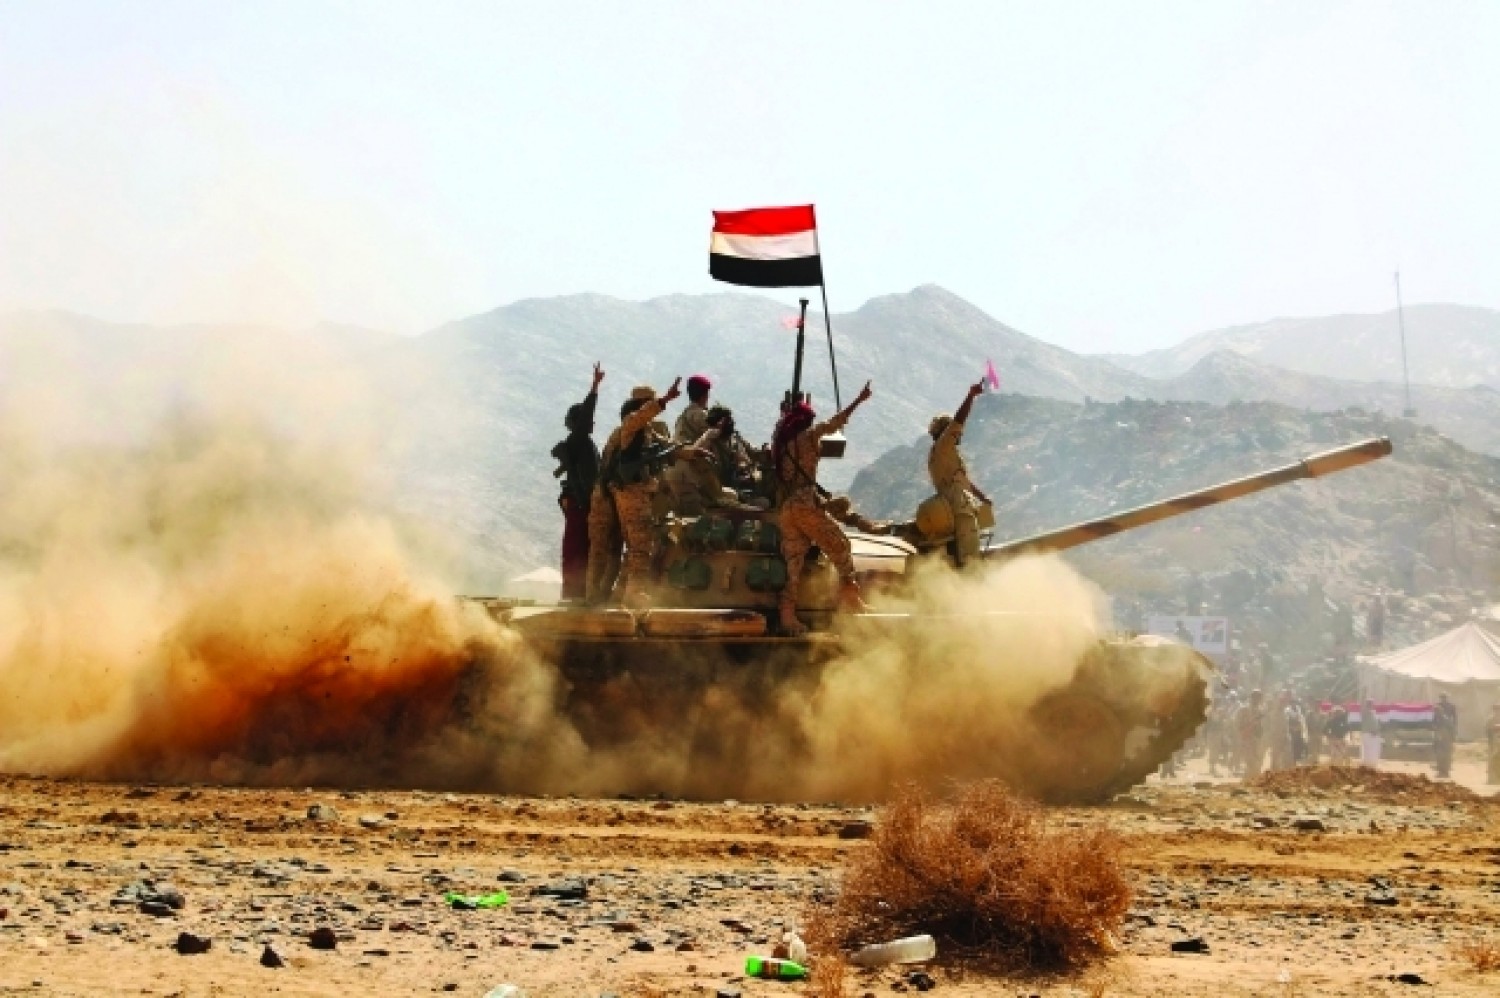 آخر التطورات الميدانية في وسط اليمن.. ما هي الاستراتيجية الجديدة لعزل تحالف العدوان السعودي في مدينة مأرب؟ + صور